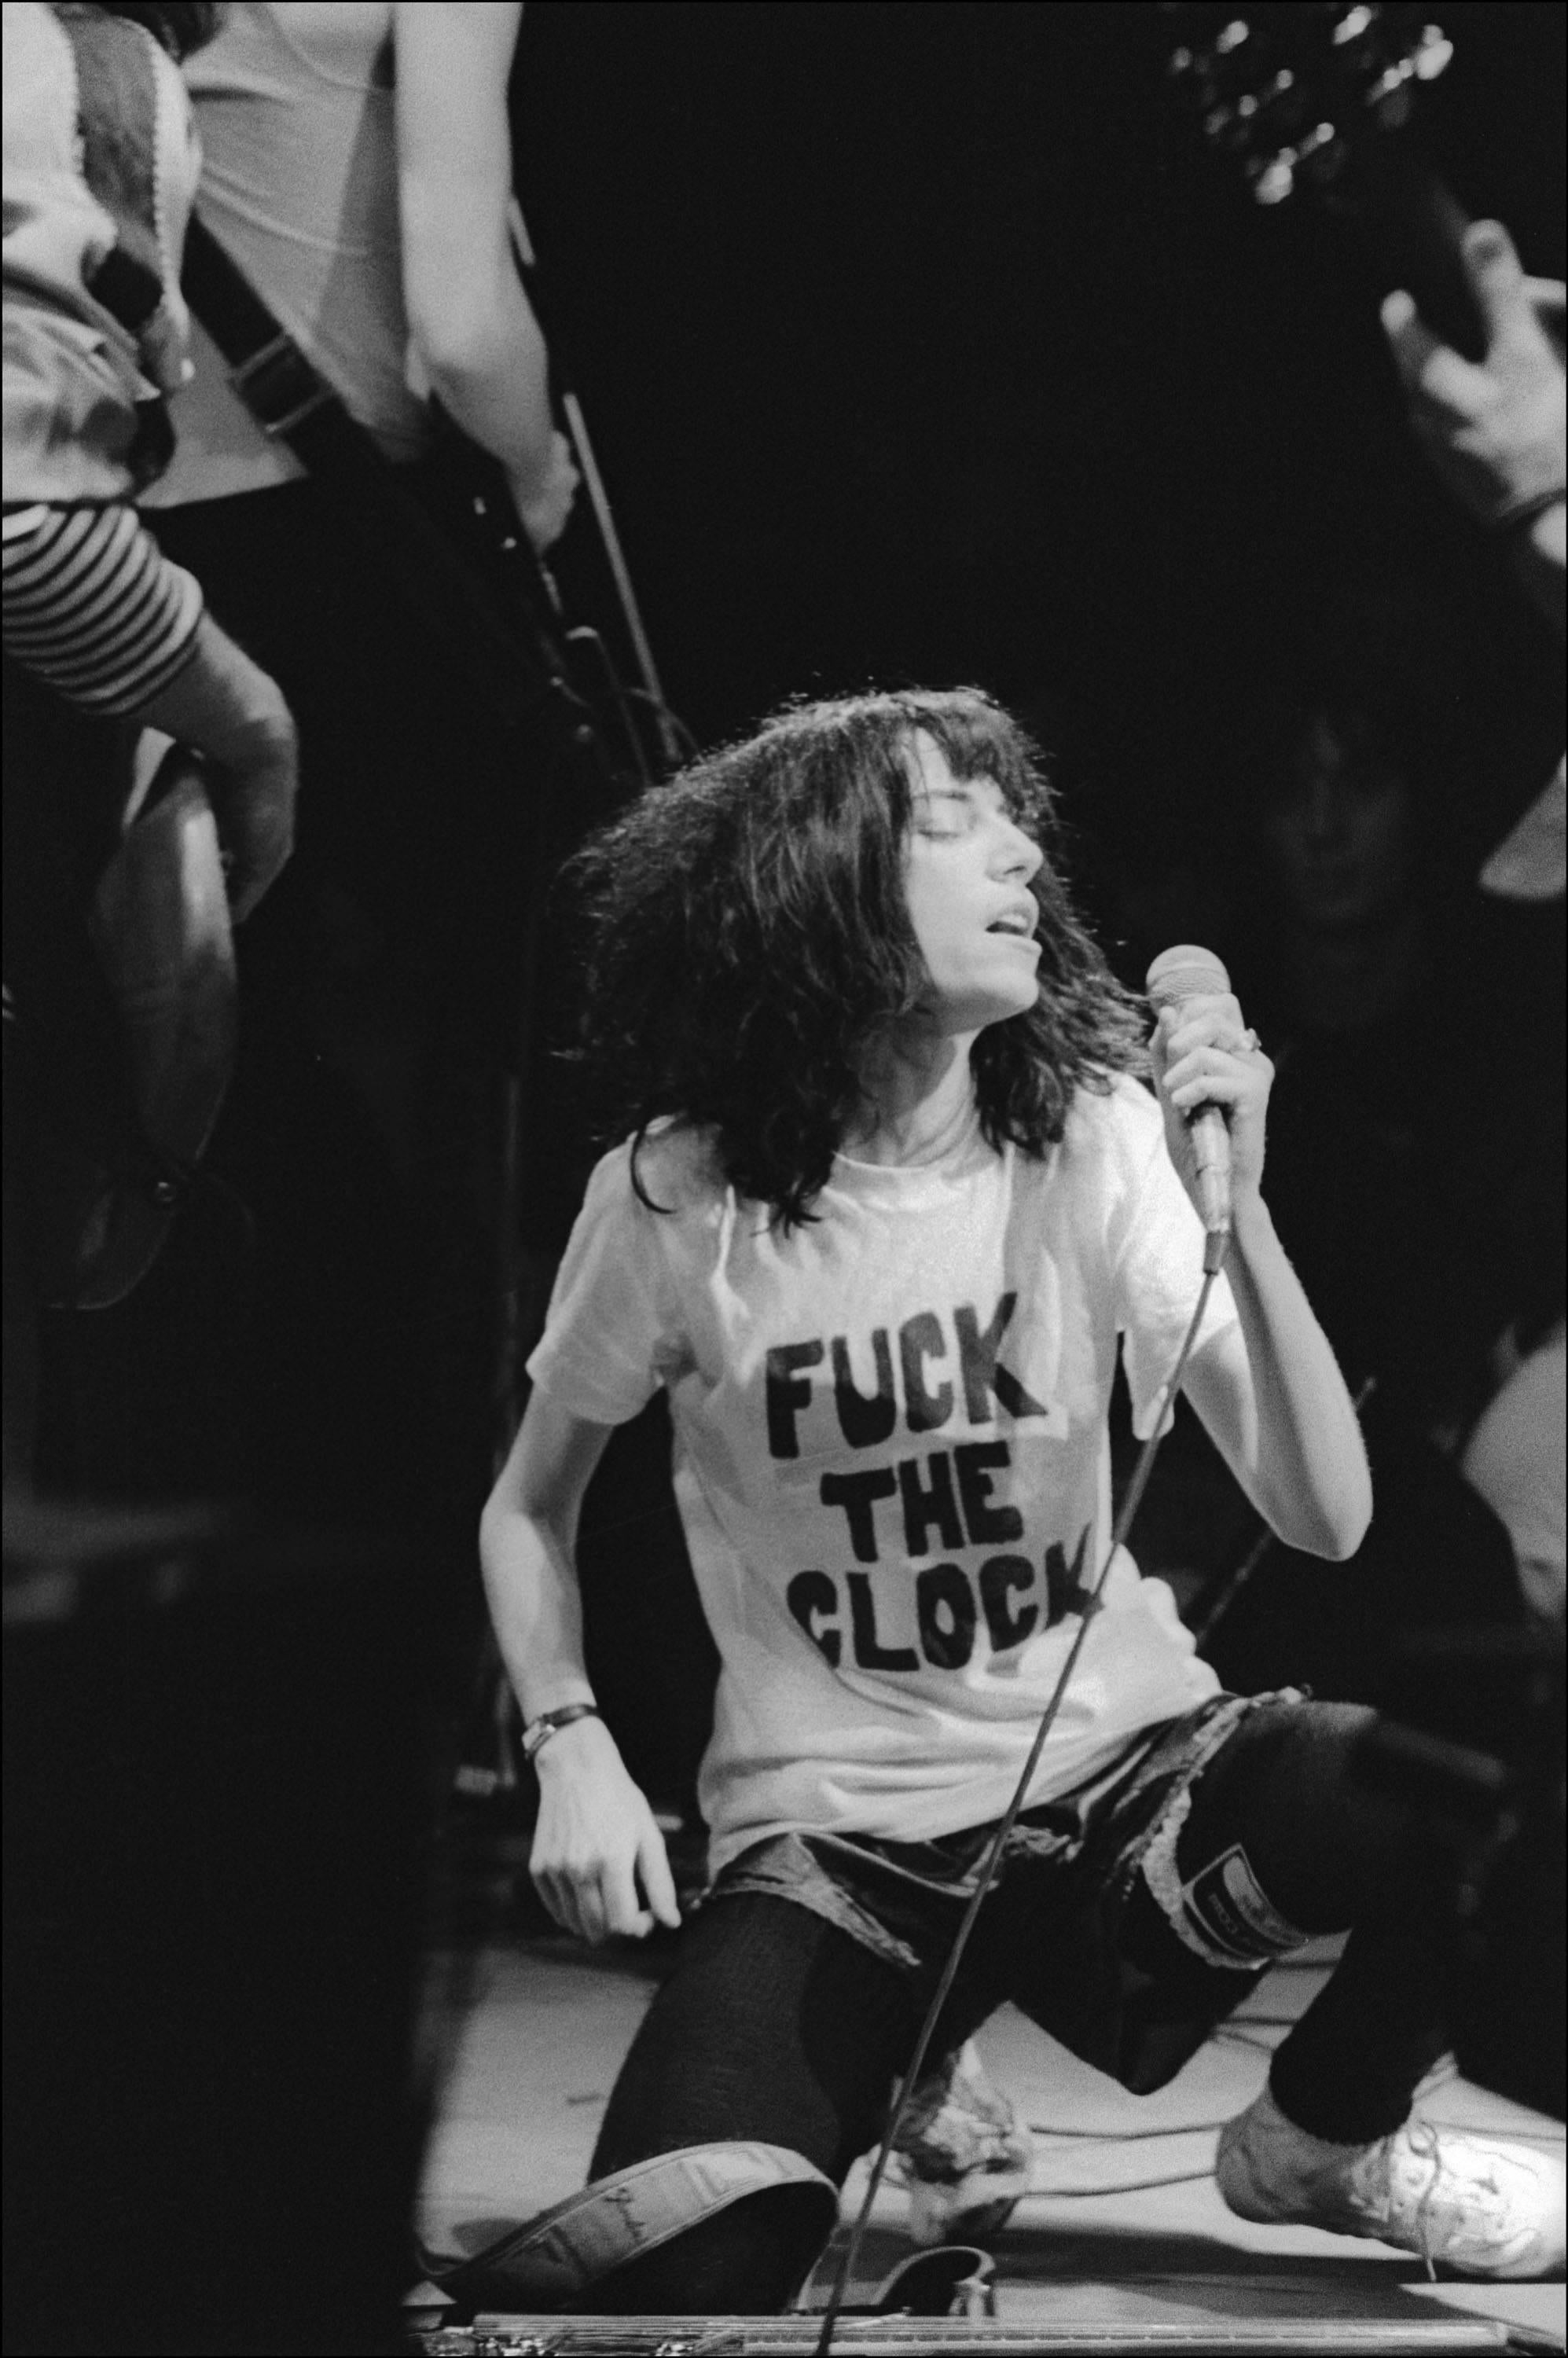 Allan Tannenbaum Black and White Photograph - Patti Smith, Fuck the Clock, 1978